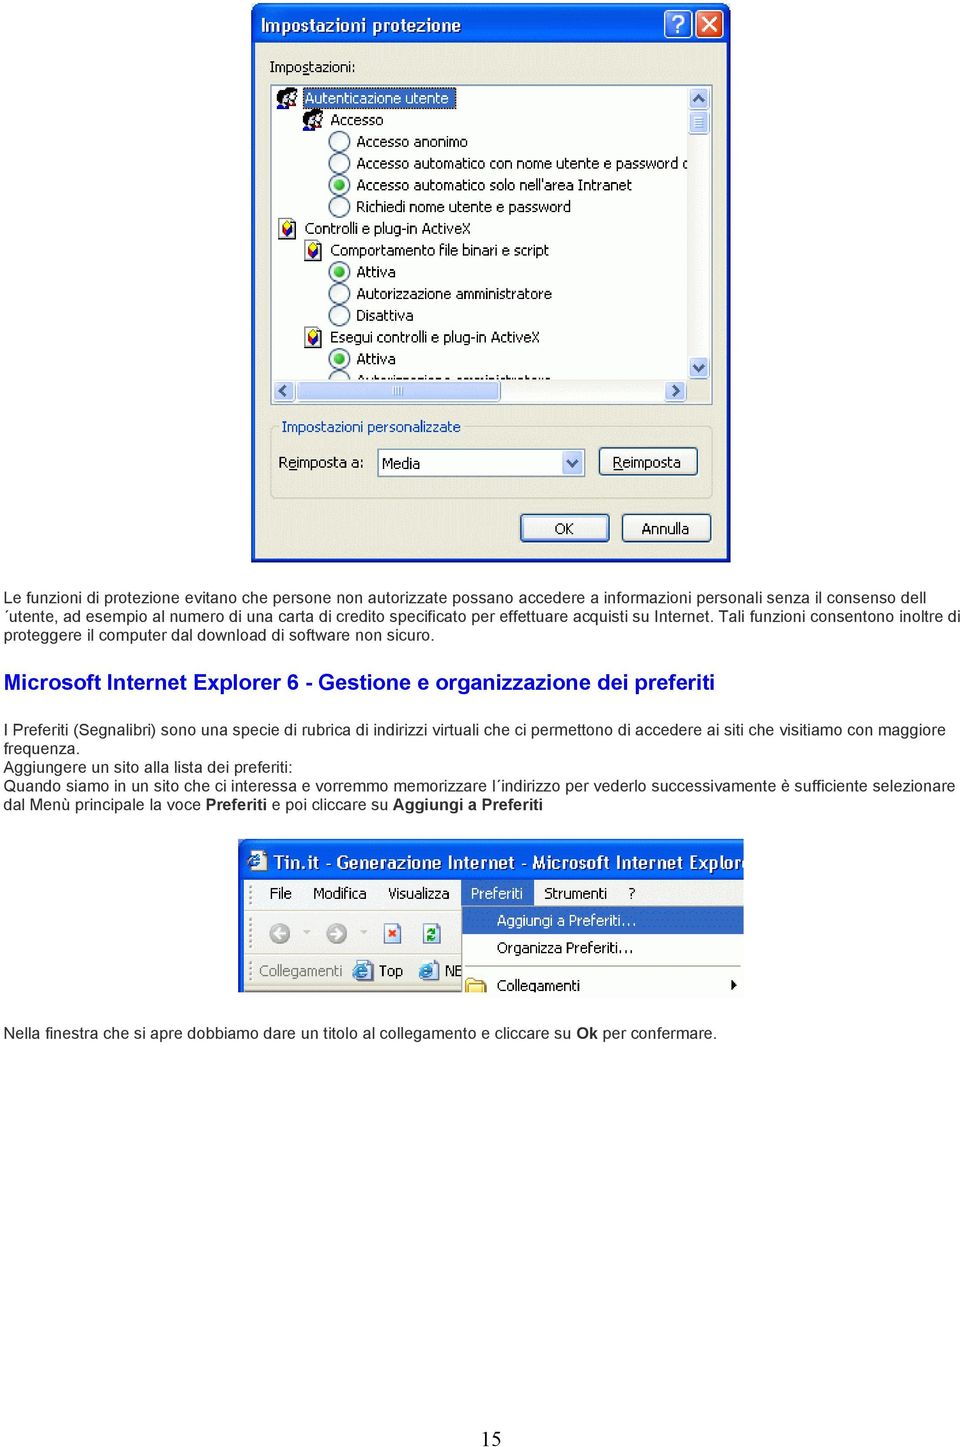 Microsoft Internet Explorer 6 - Gestione e organizzazione dei preferiti I Preferiti (Segnalibri) sono una specie di rubrica di indirizzi virtuali che ci permettono di accedere ai siti che visitiamo